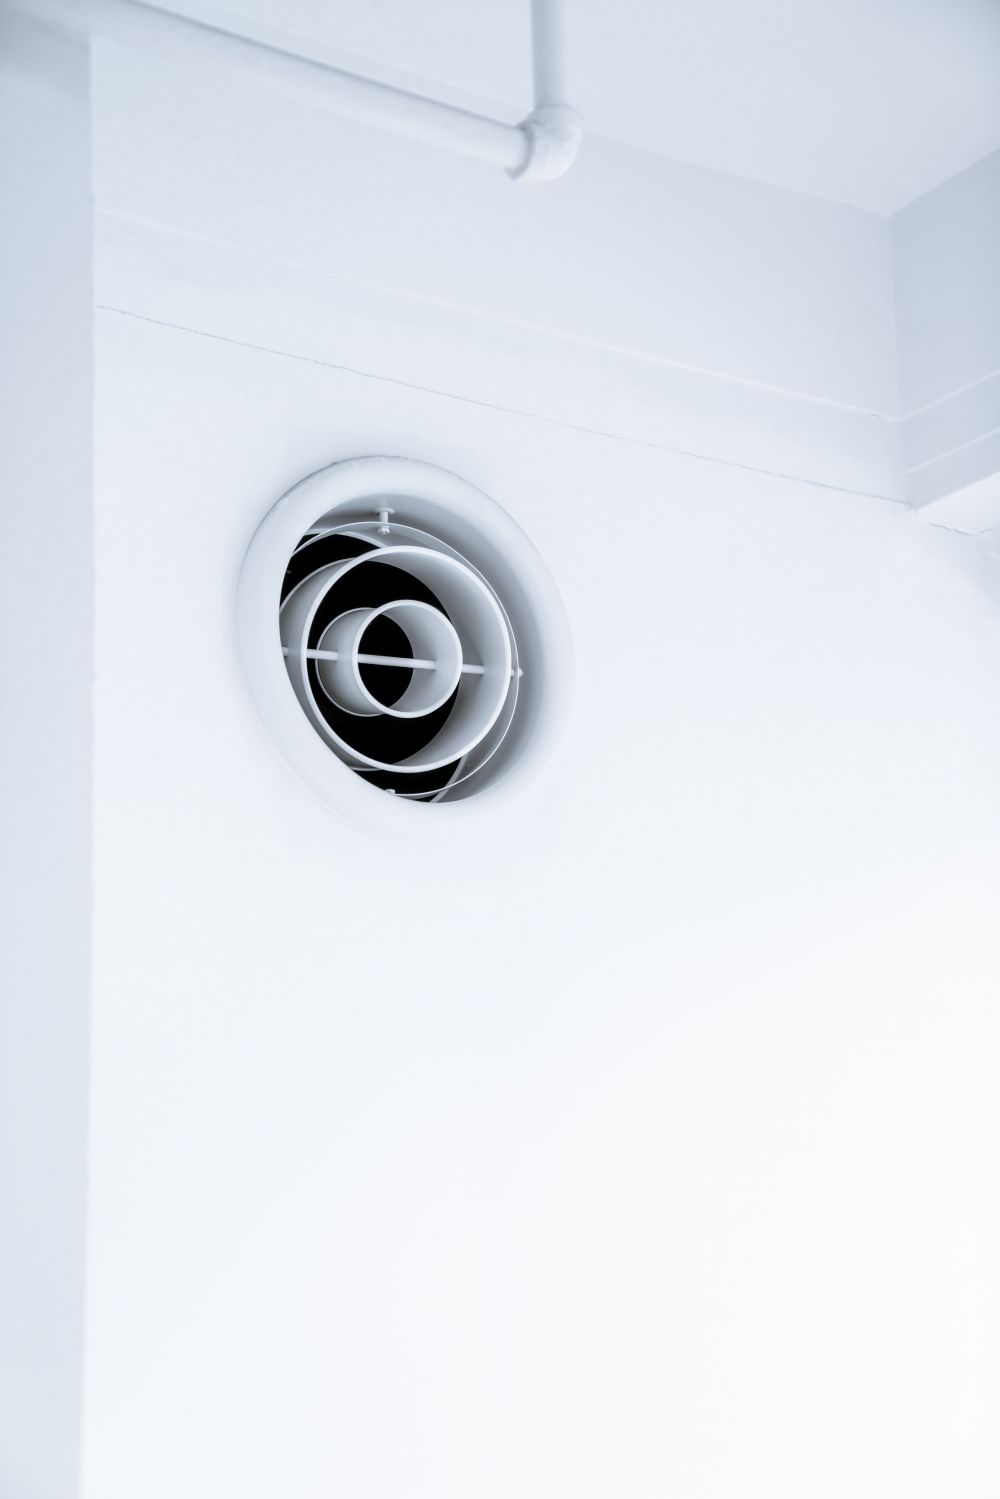 Det er vigtigt at få foretaget en ventilationsrens på dit hjem – her er hvorfor